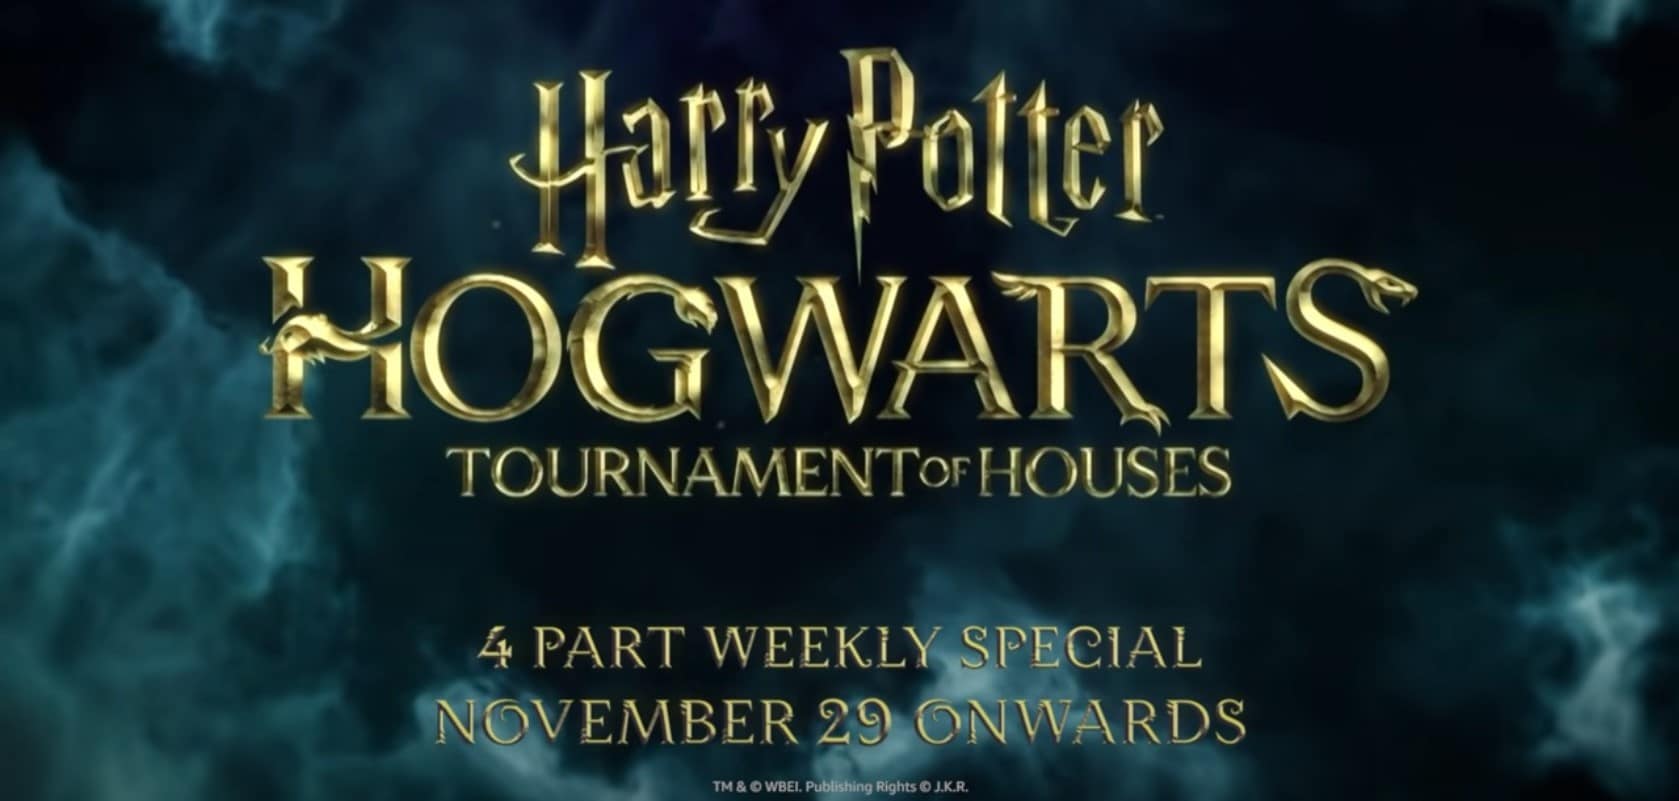 Sur cette photo, on peut lire "Harry Potter : Hogwarts, Tournament of Houses".